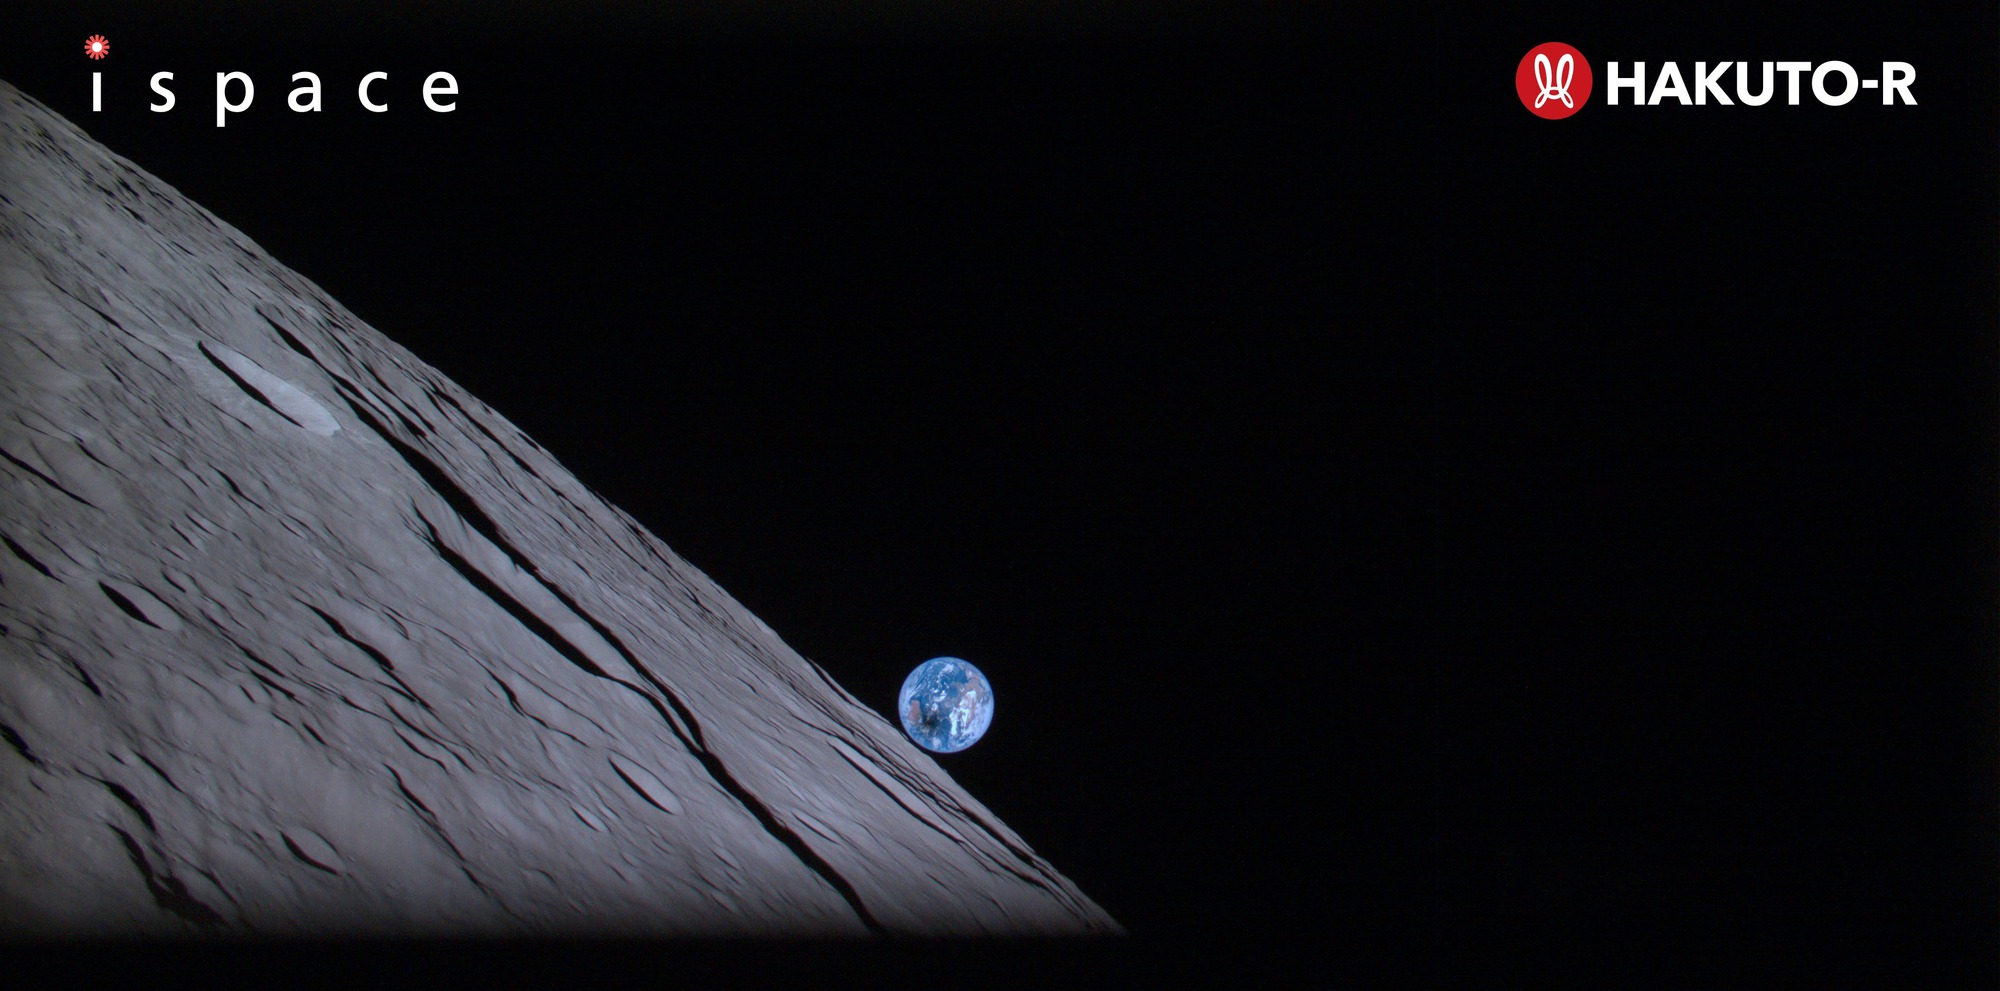 Một công ty tư nhân chuẩn bị đáp xuống Mặt Trăng, livestream toàn bộ quá trình hạ cánh trên YouTube - Ảnh 3.